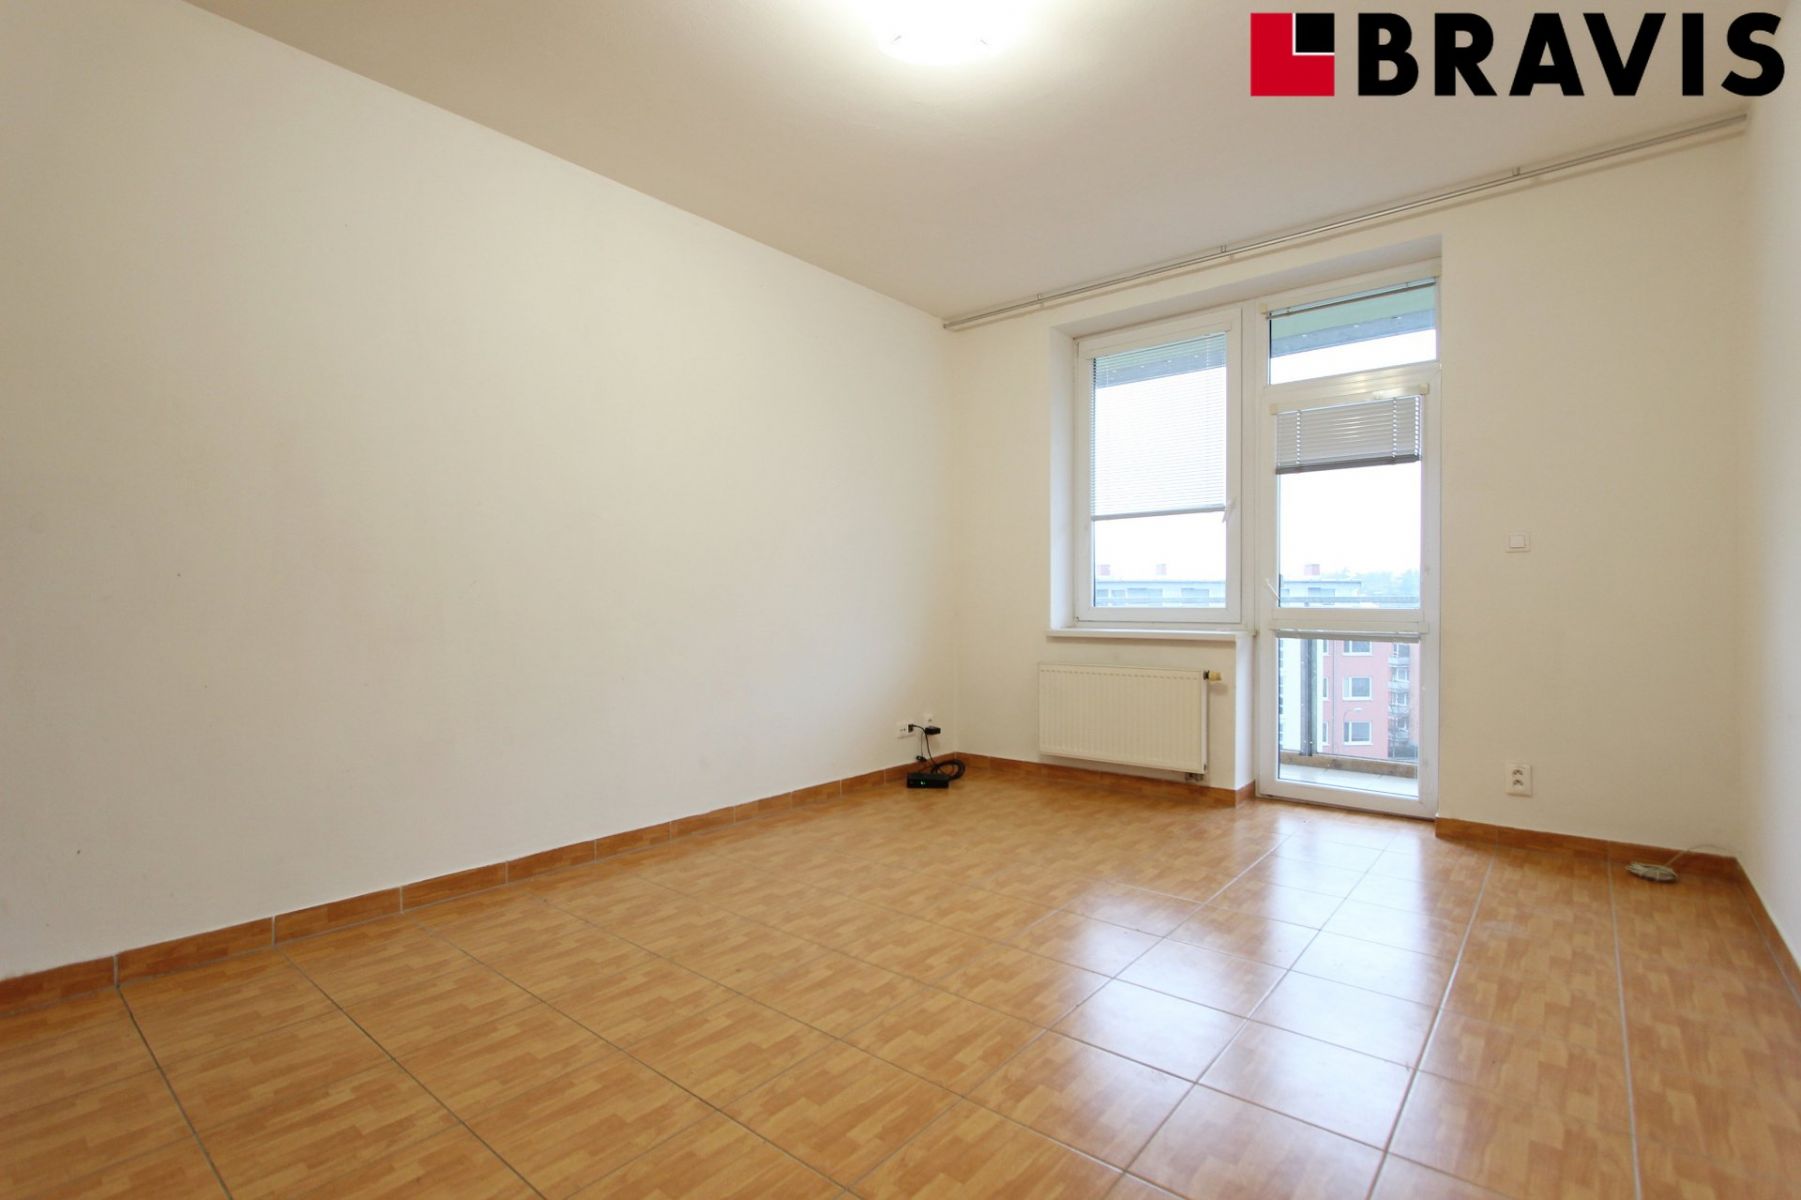 Pronájem bytu 2+kk, Brno - Medlánky, ulice Hrázka, balkon, garážové stání v ceně, sklep, klidná loka, obrázek č. 2